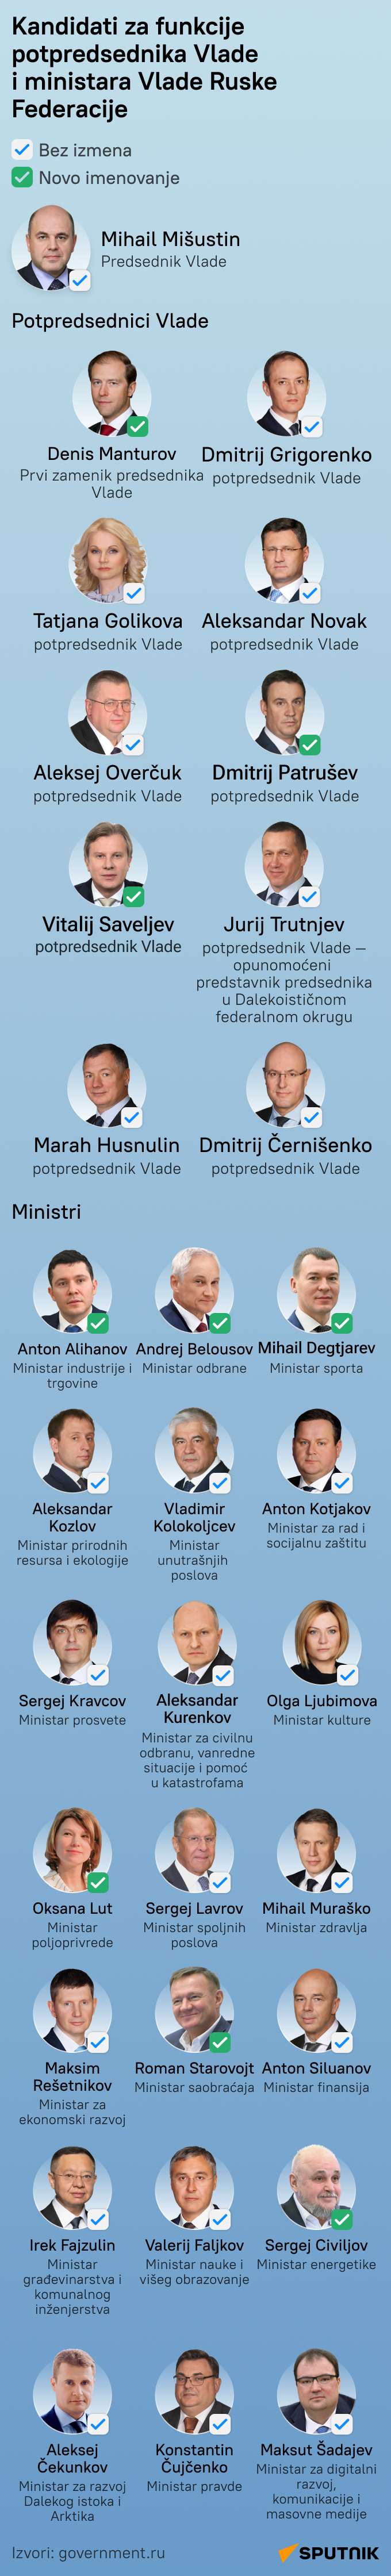 Kandidati za potpredsednike u novoj Vladi Rusije LATINICA mob - Sputnik Srbija